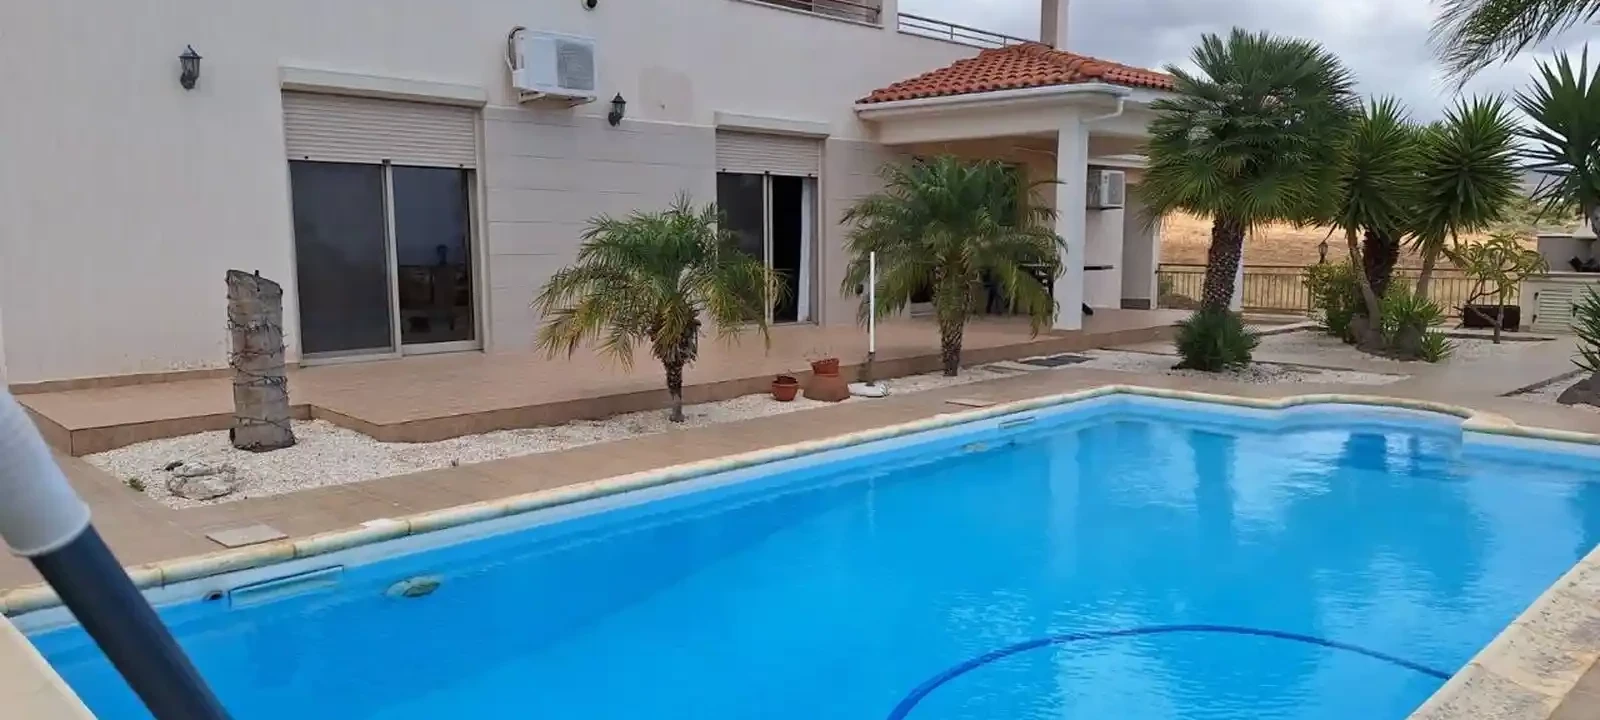 4-bedroom villa to rent €2.500, image 1